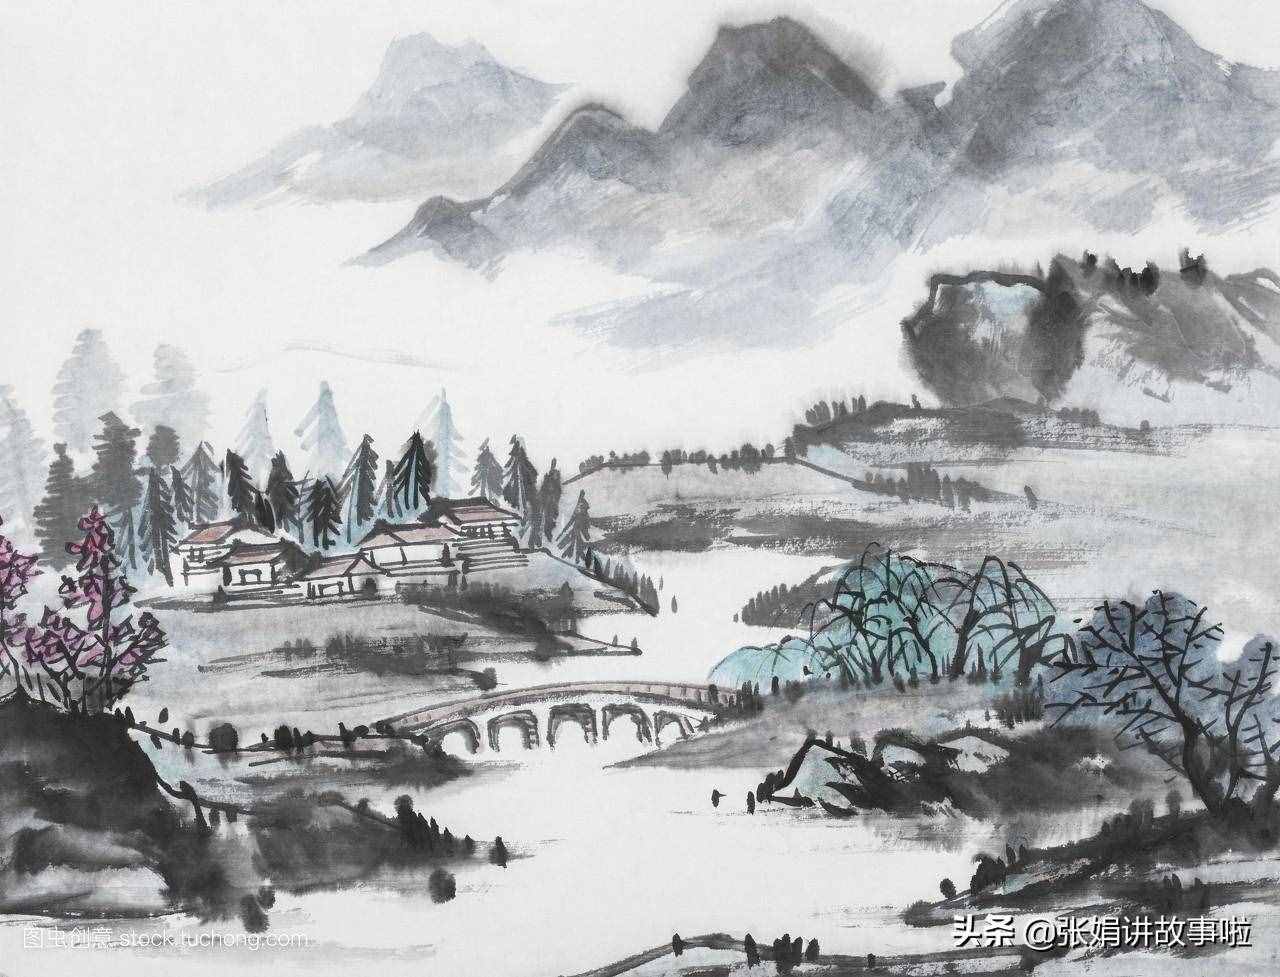 “唐代三李”之一的大诗人李贺，被誉为“诗鬼”，分享李贺的名诗